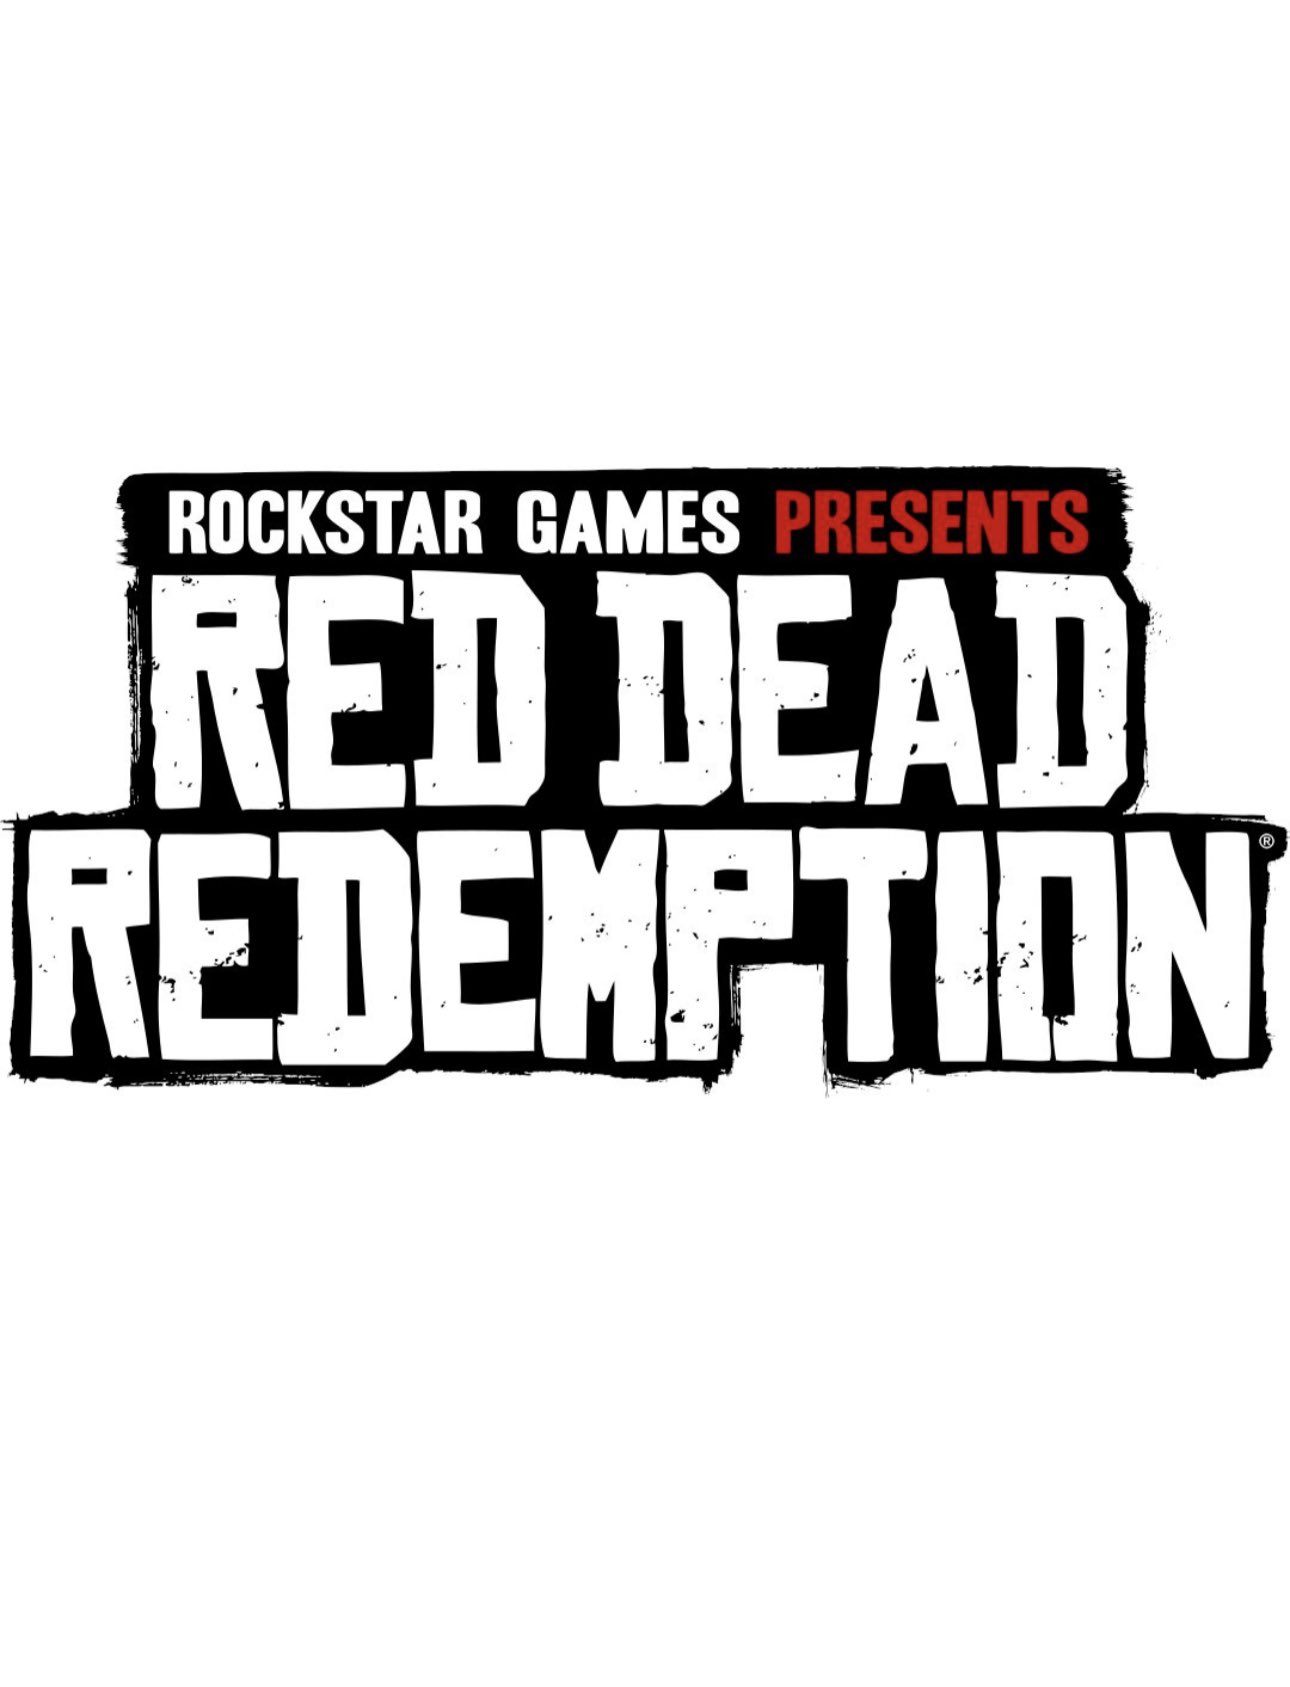 Red Dead Redemption - Rockstar Games